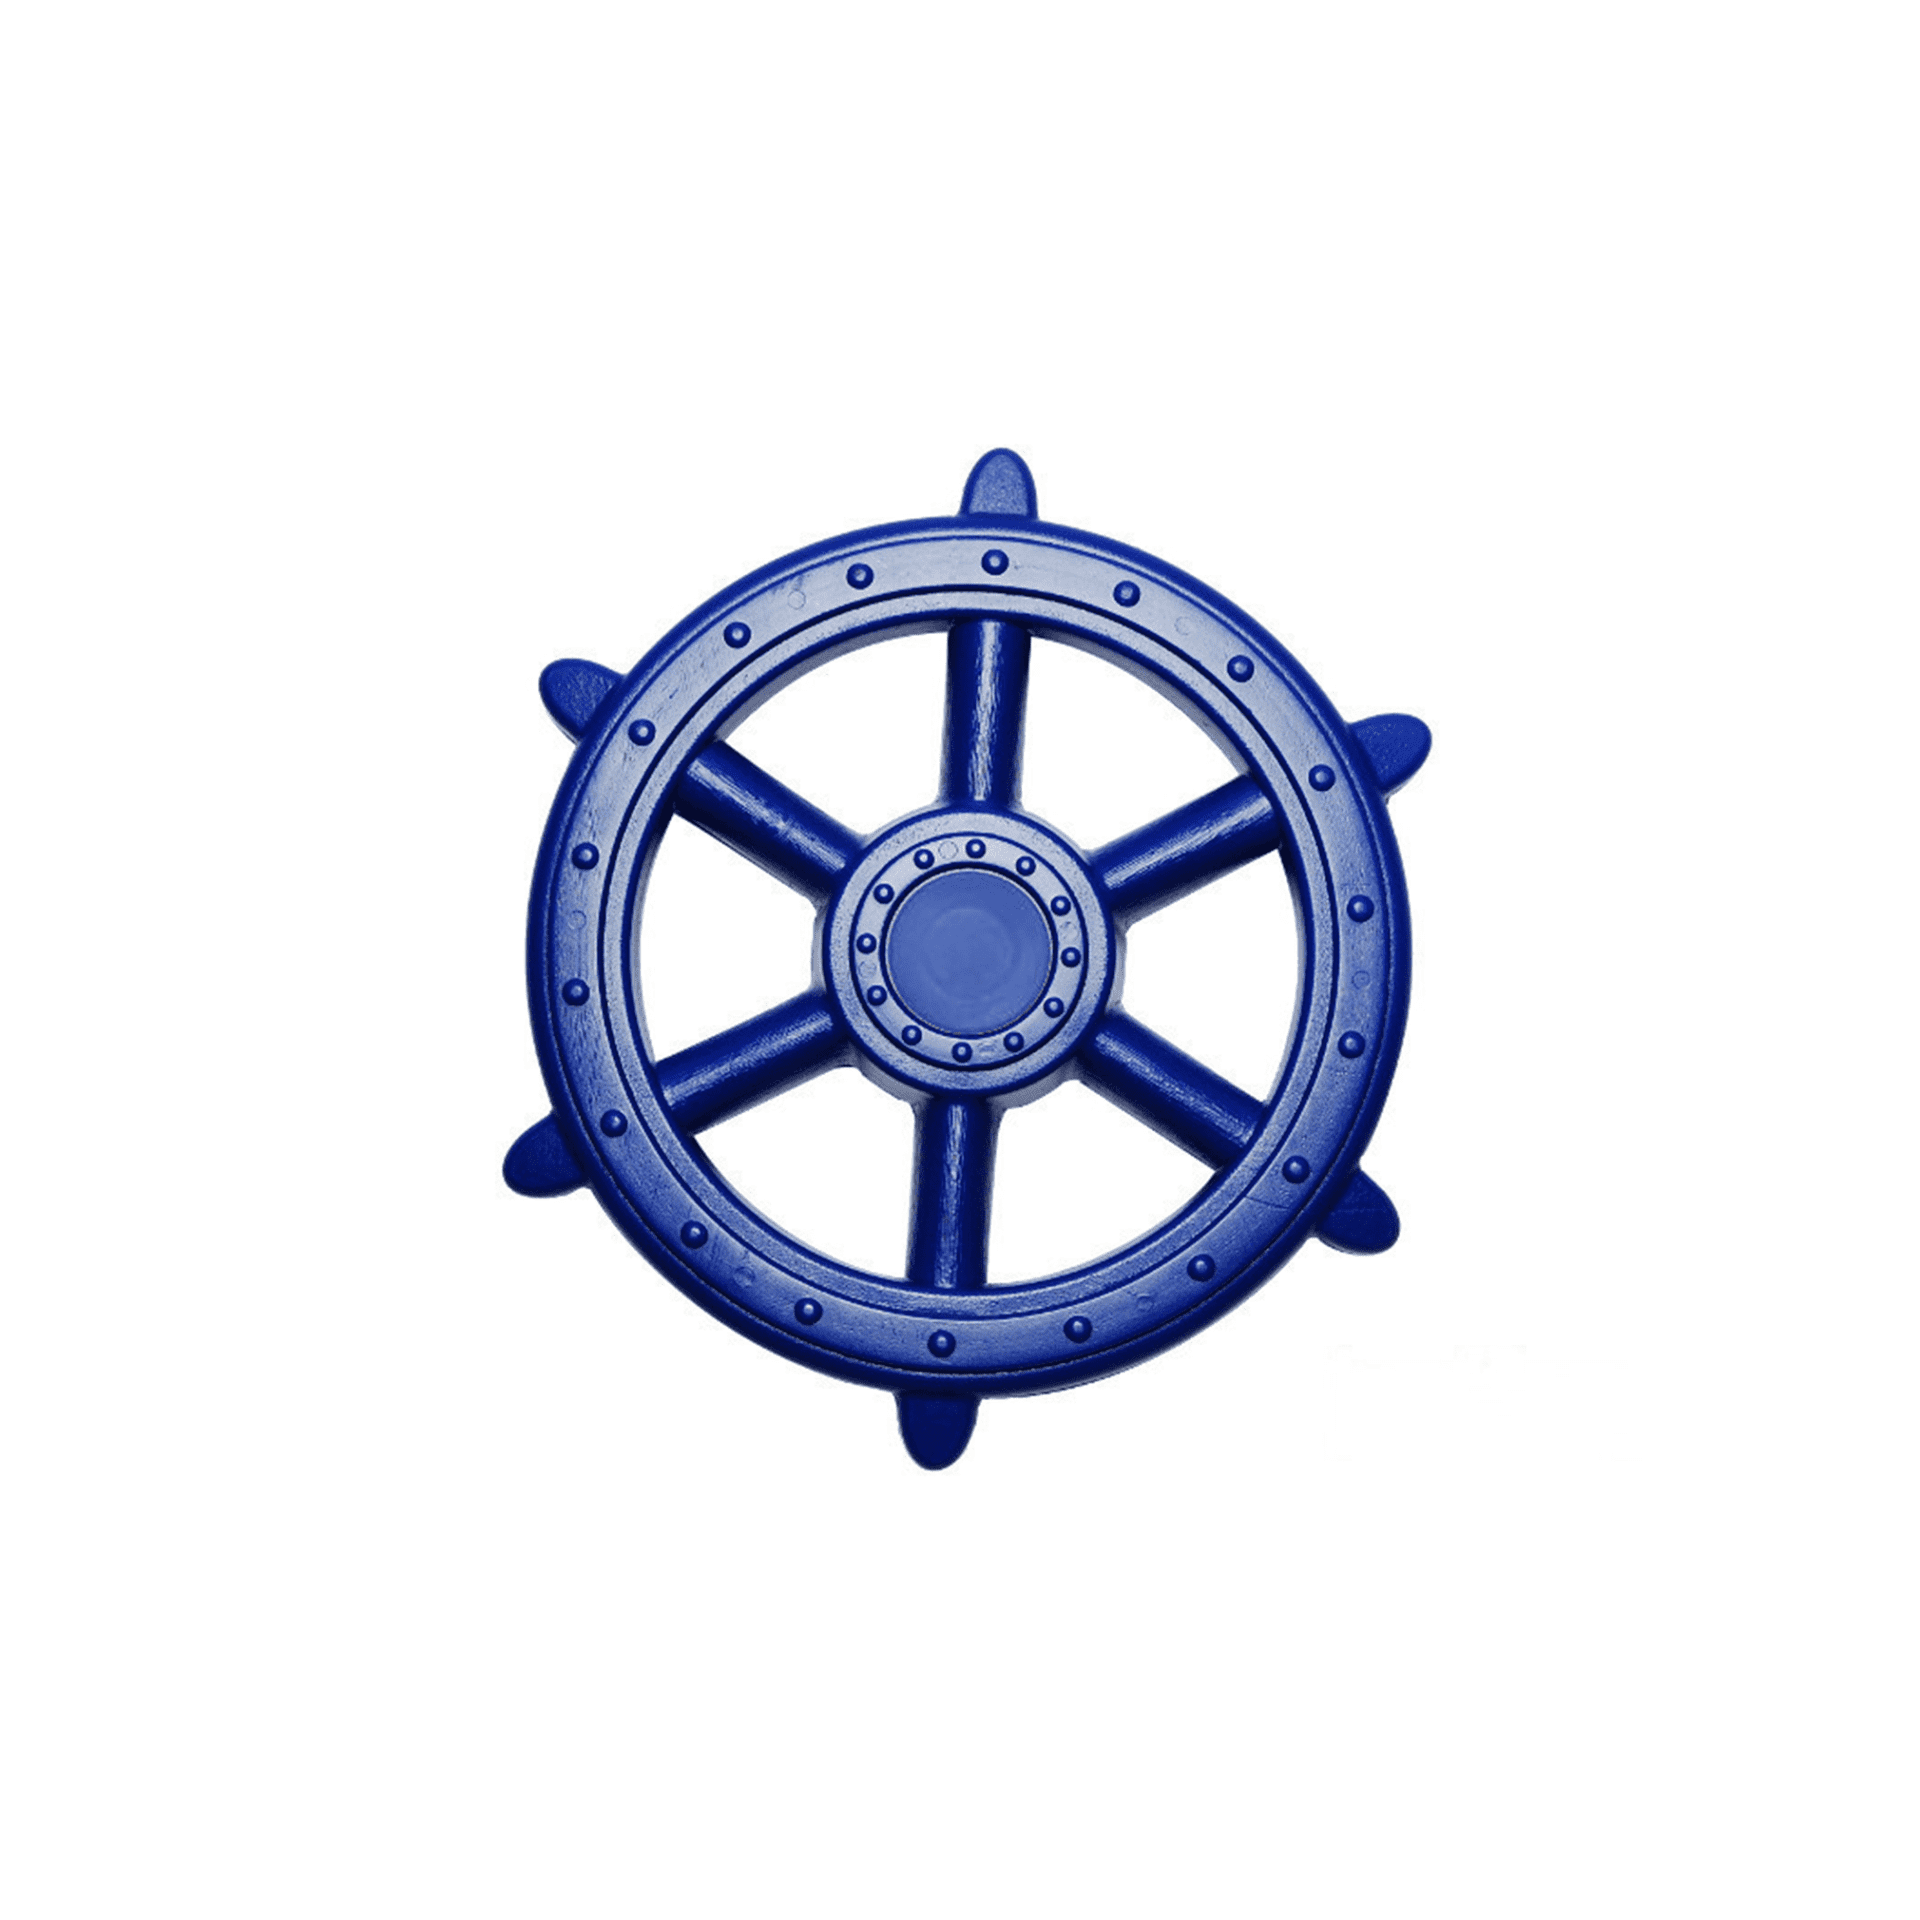 Pirātu kuģa stūre (zilā krāsā)